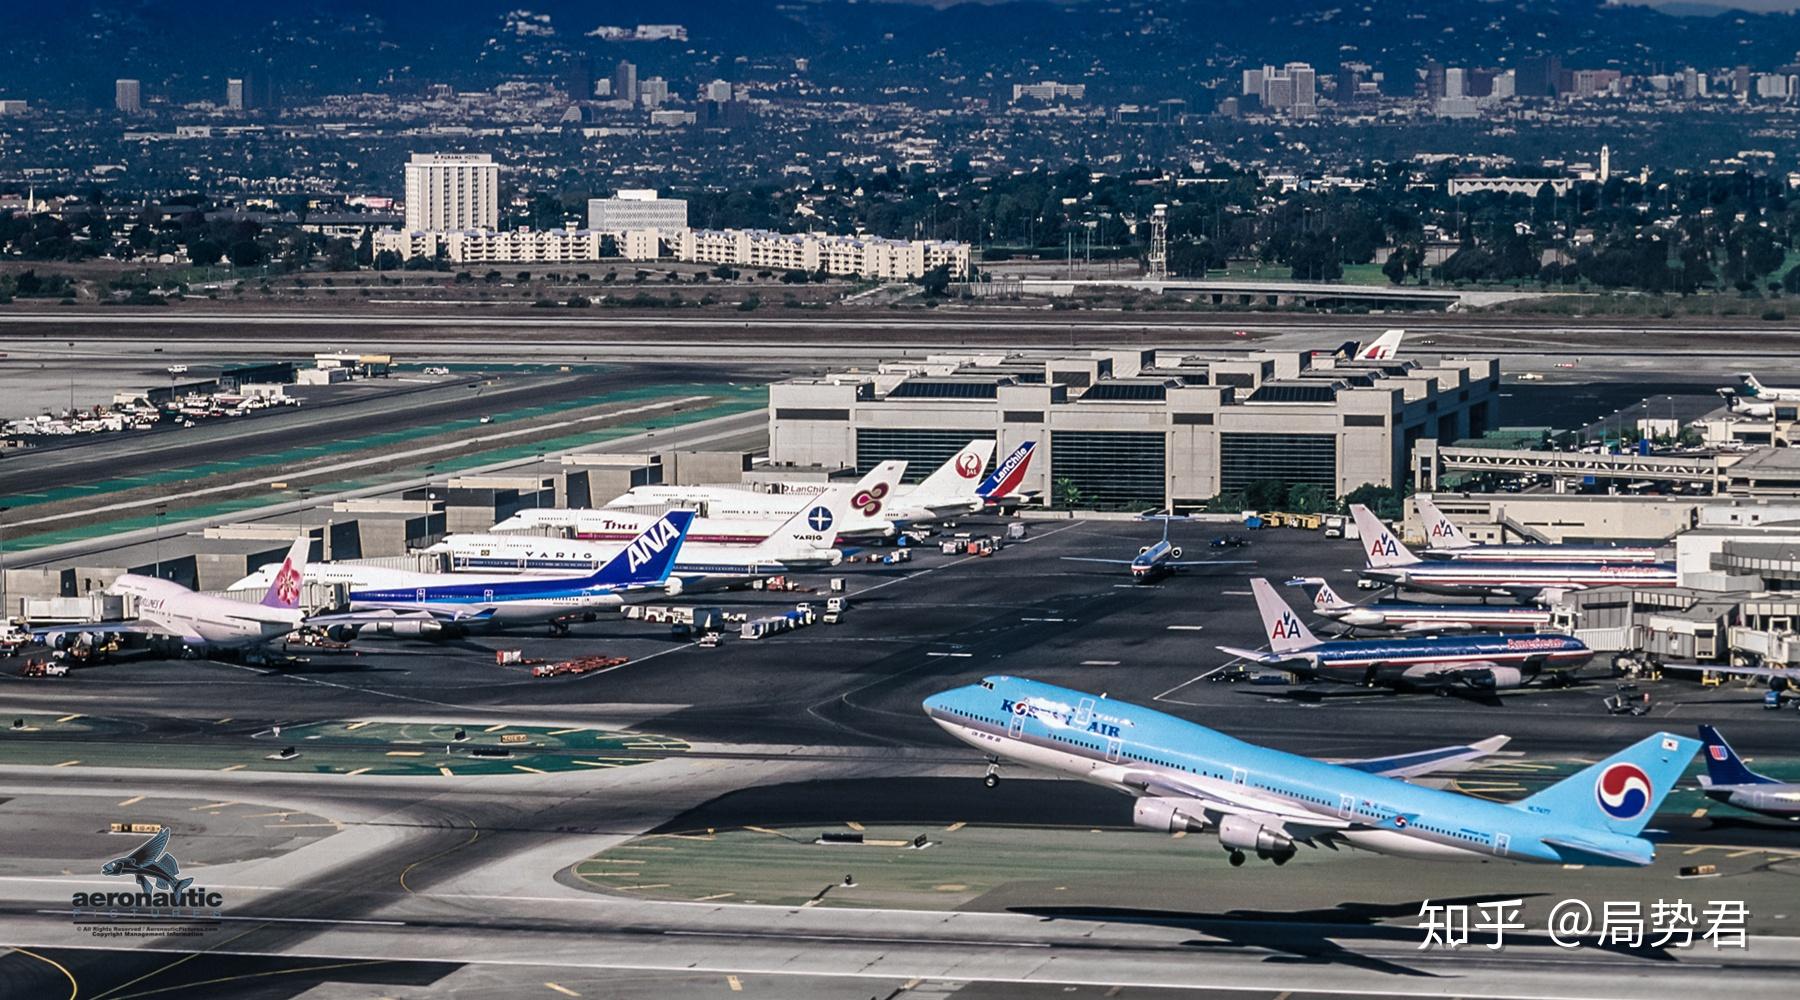 客流量:8806万人次洛杉矶国际机场是美国加州大洛杉矶地区的主要机场